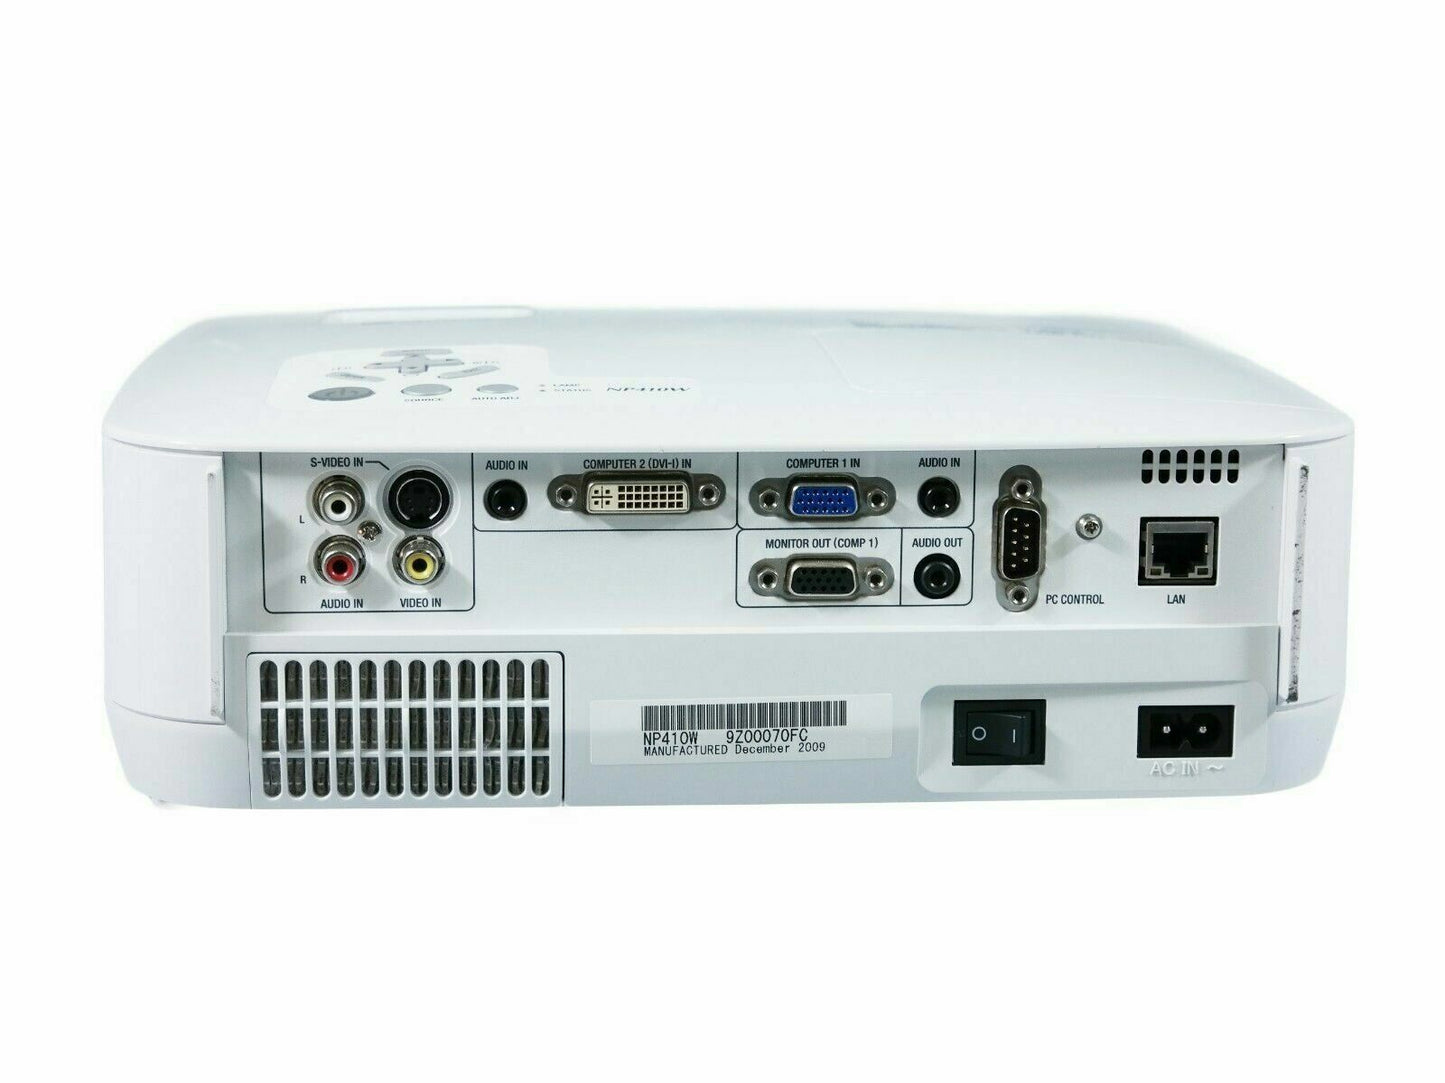 NEC NP410W Portable Projector w/Remote